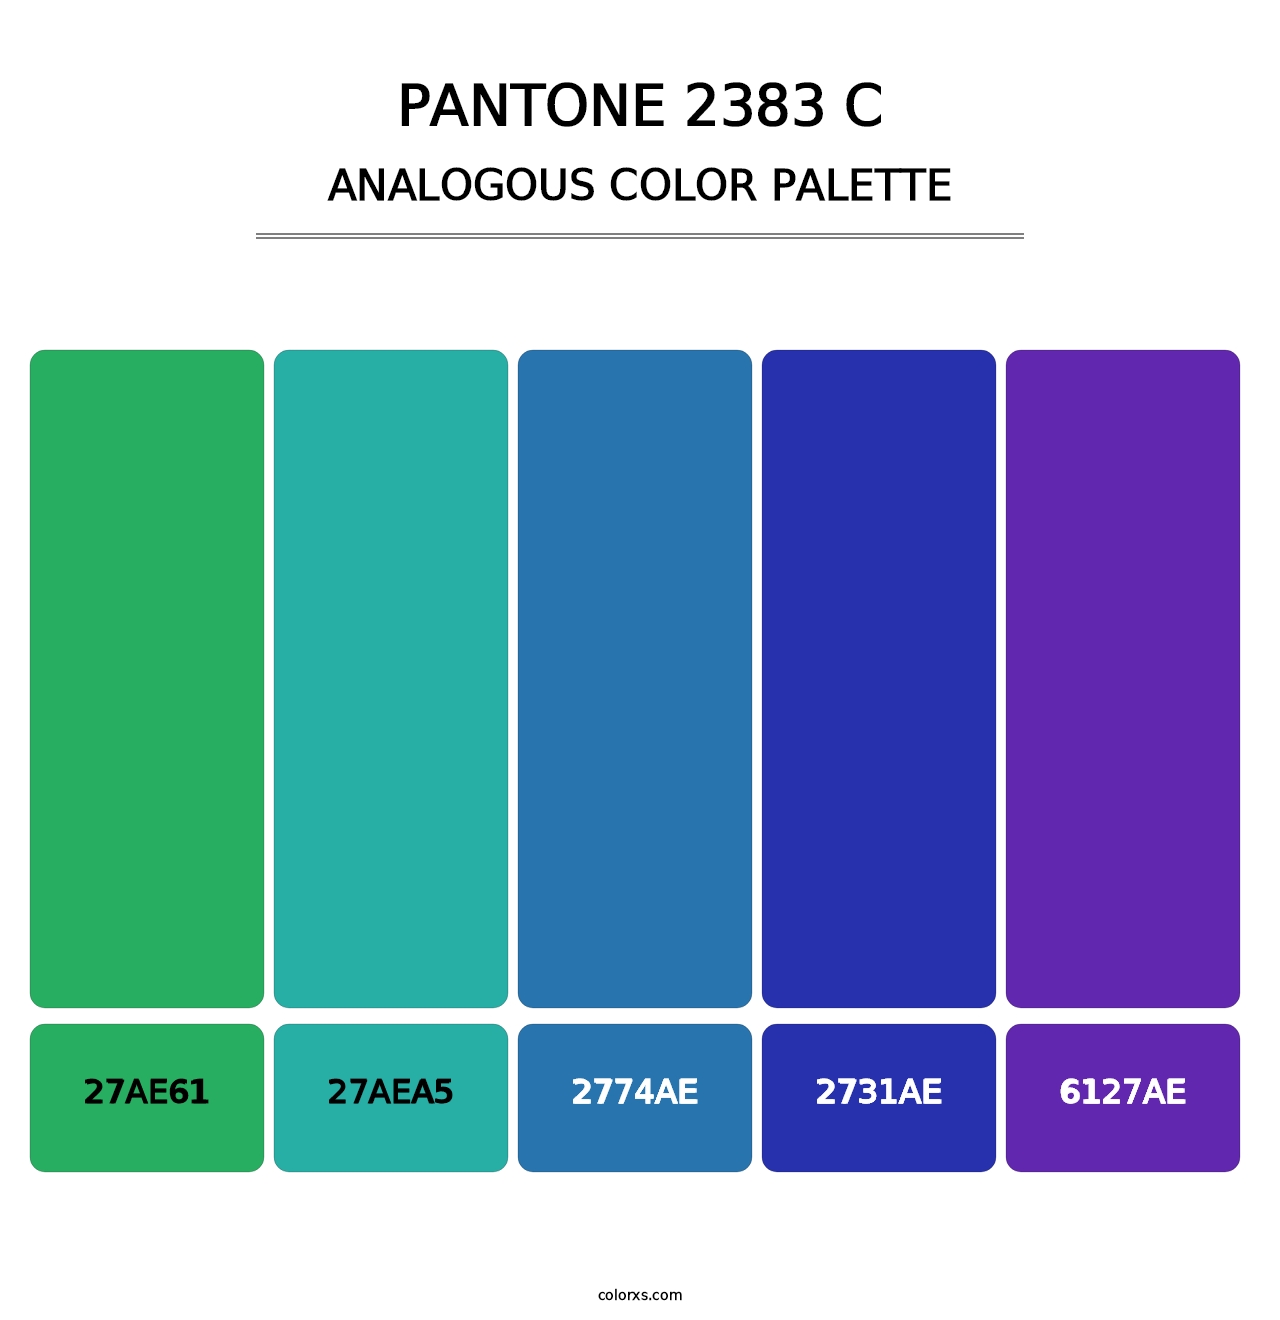 PANTONE 2383 C - Analogous Color Palette